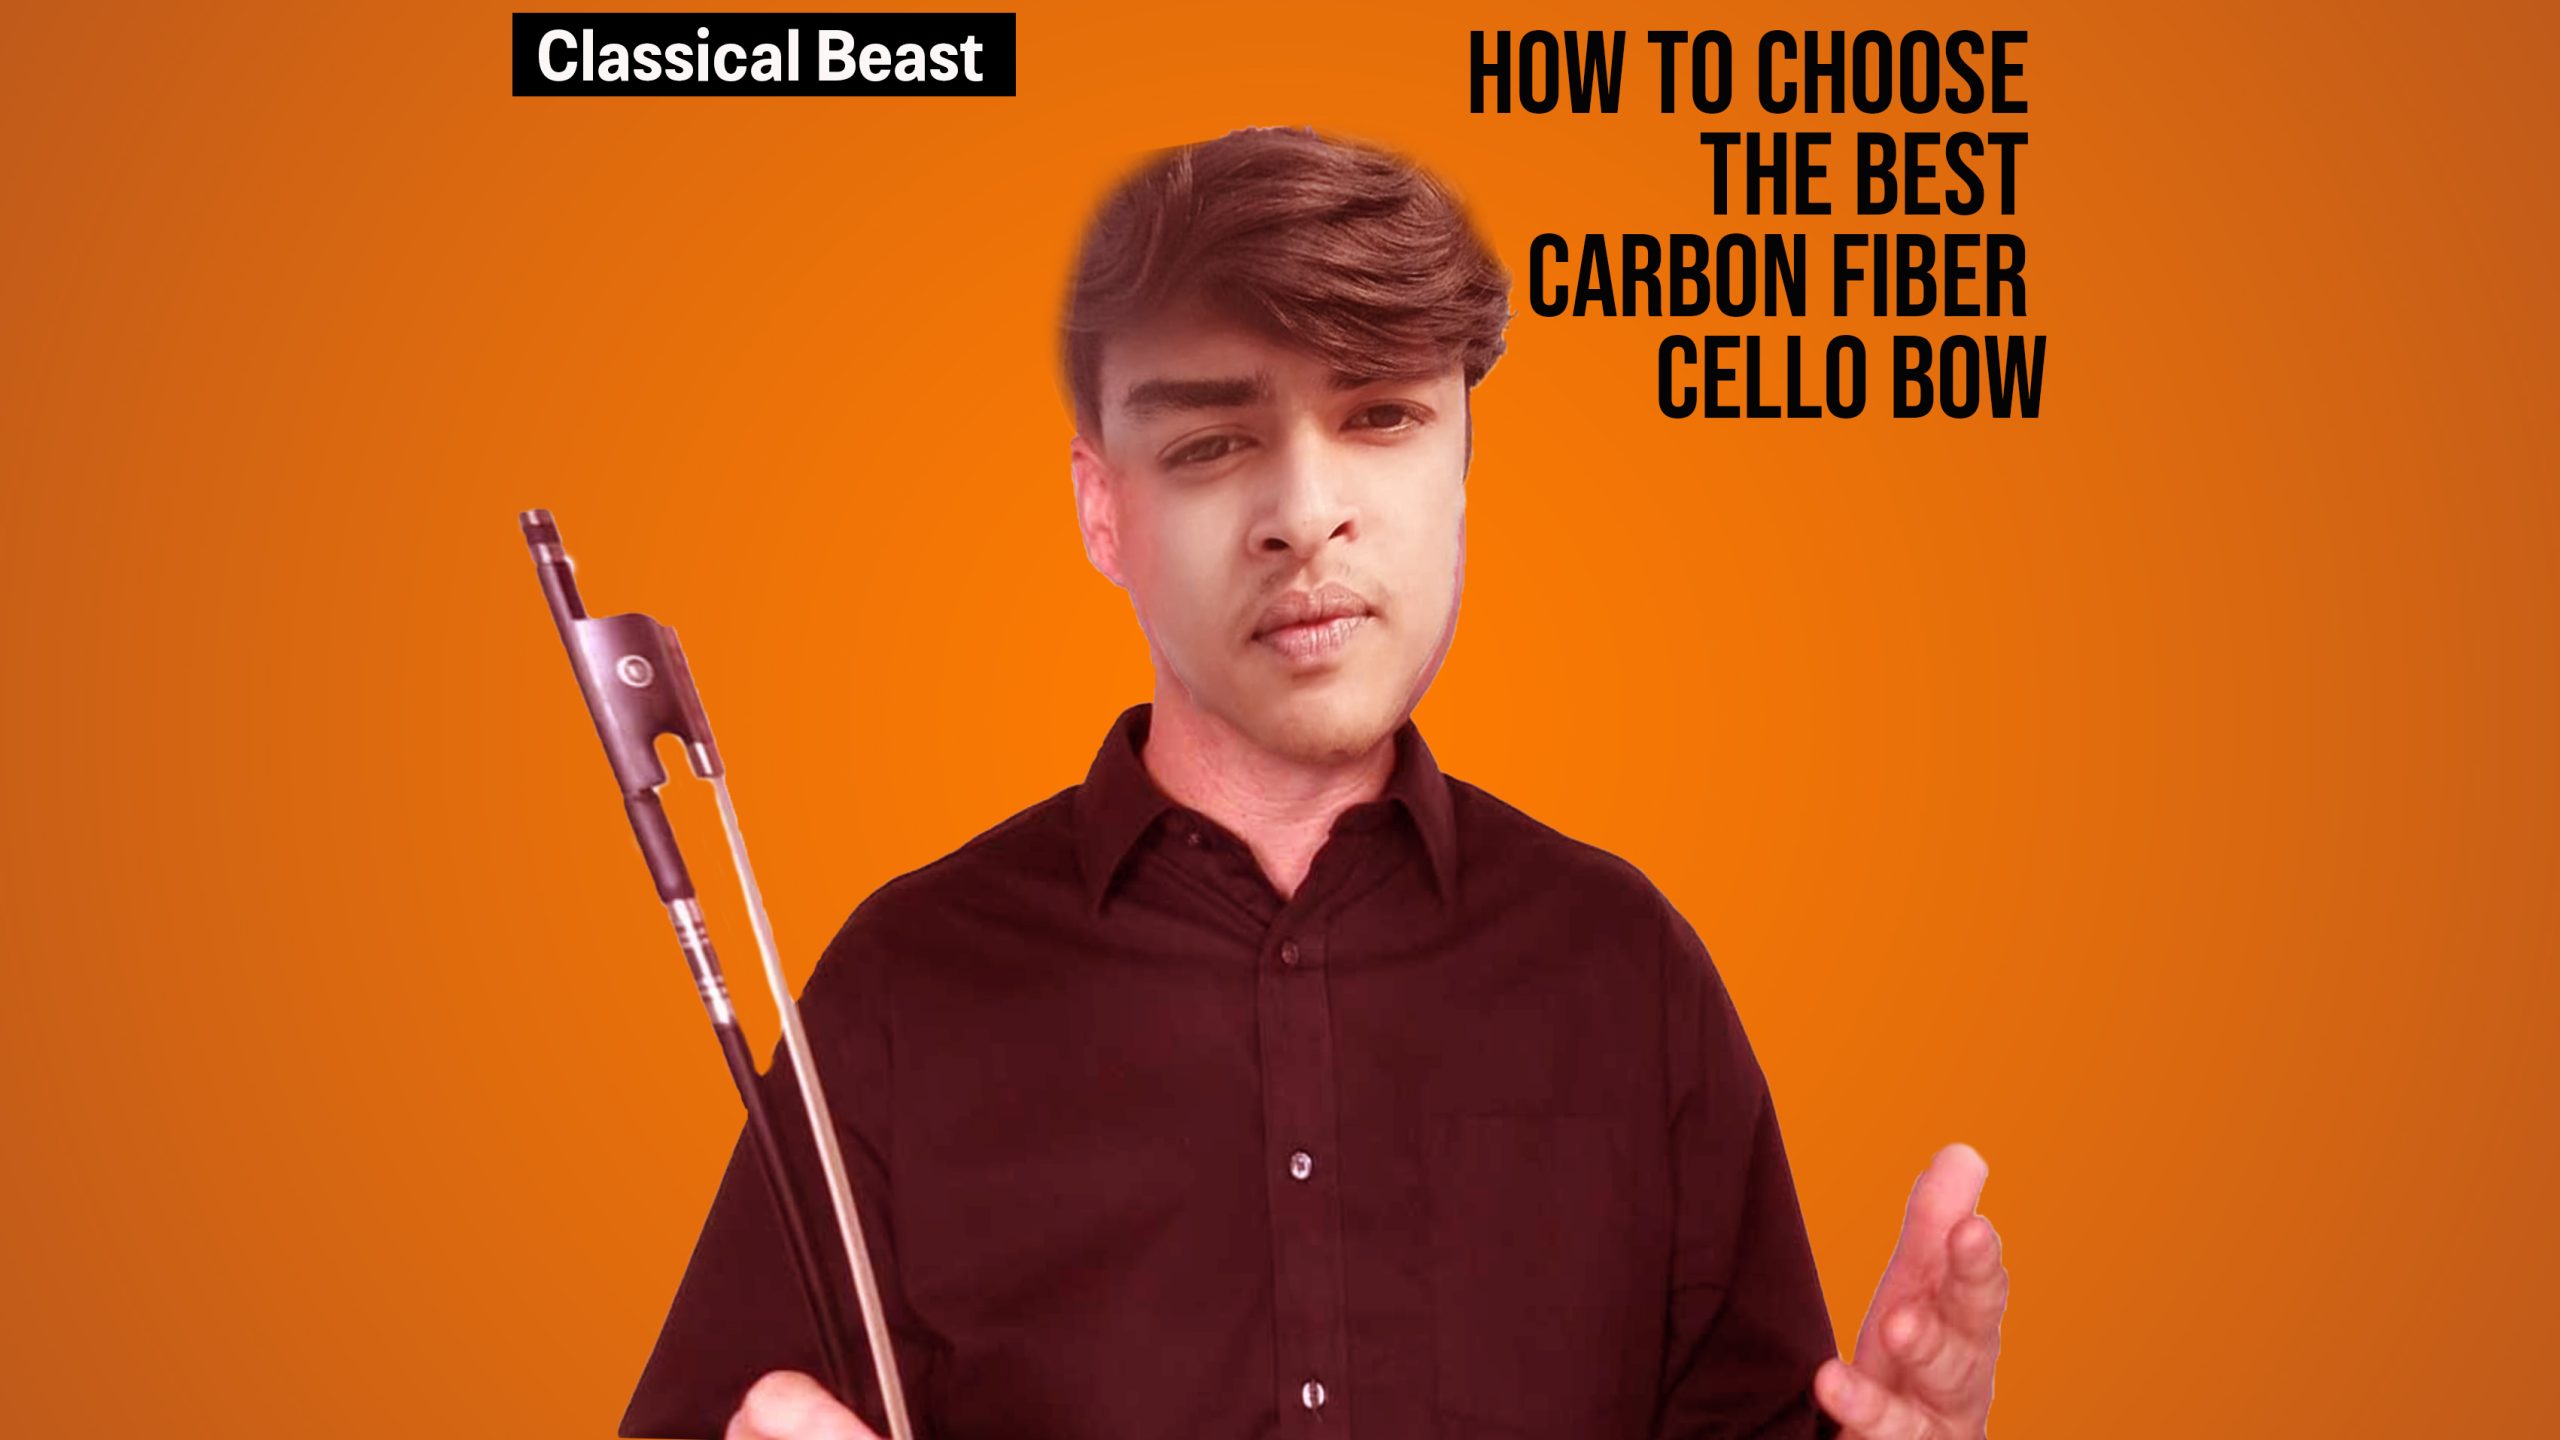 Carbon fiber cello bow